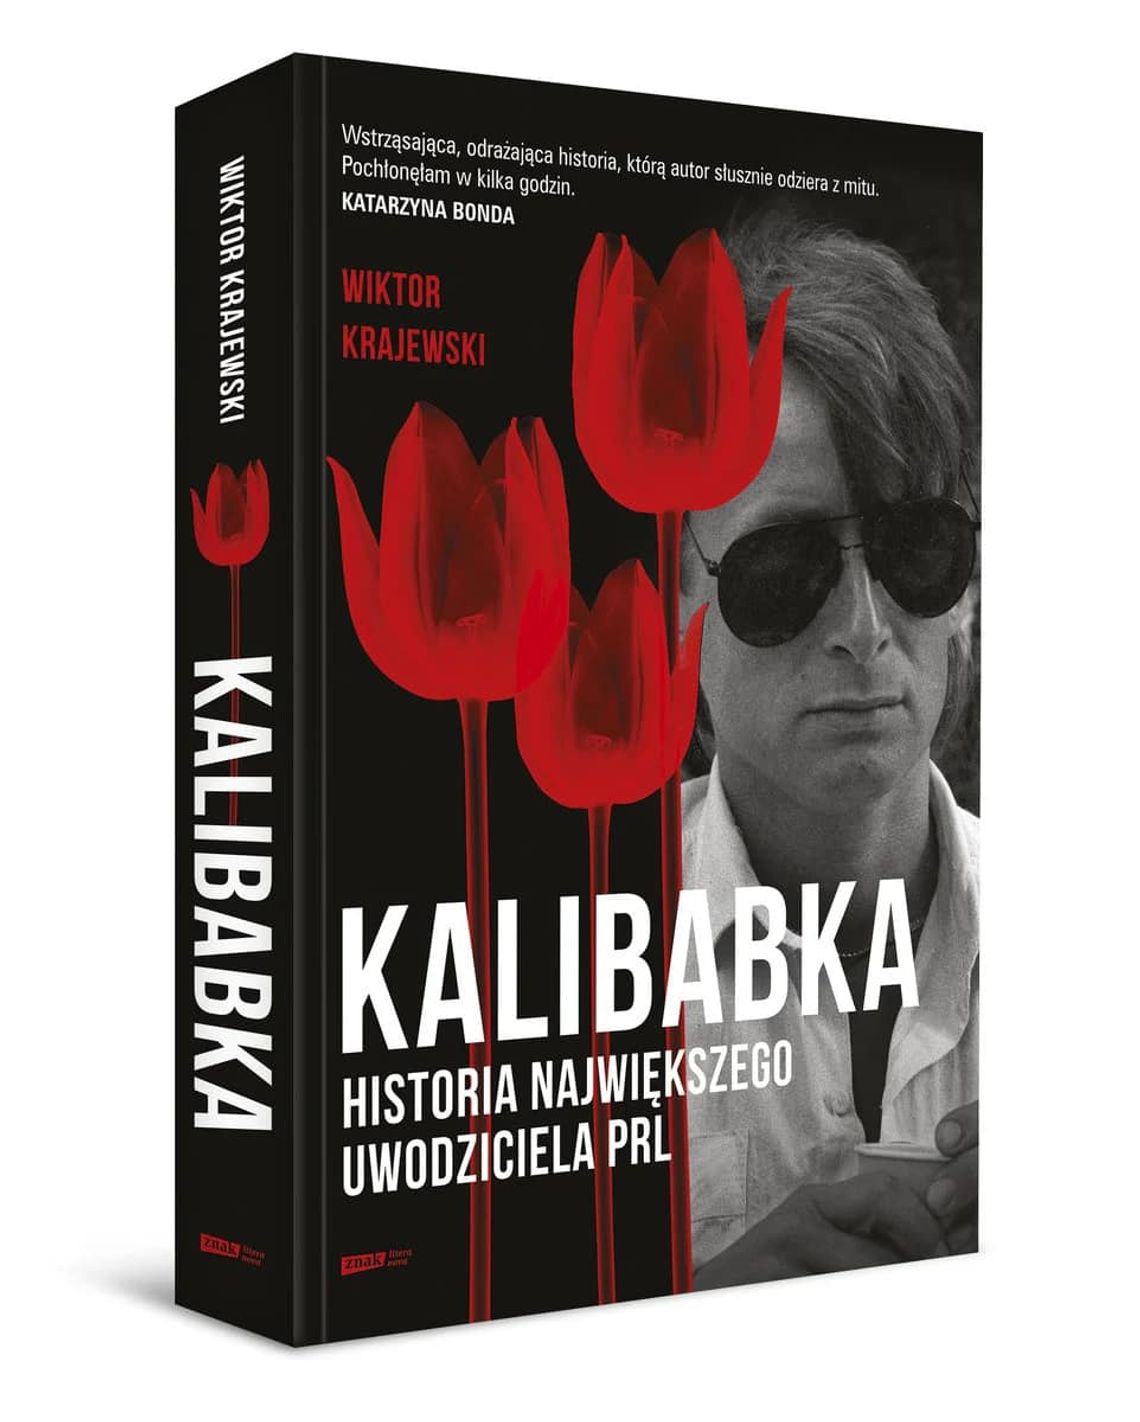 Kochał, bił i kradł - Kalibabka - historia najsłynniejszego oszusta i uwodziciela PRL-u